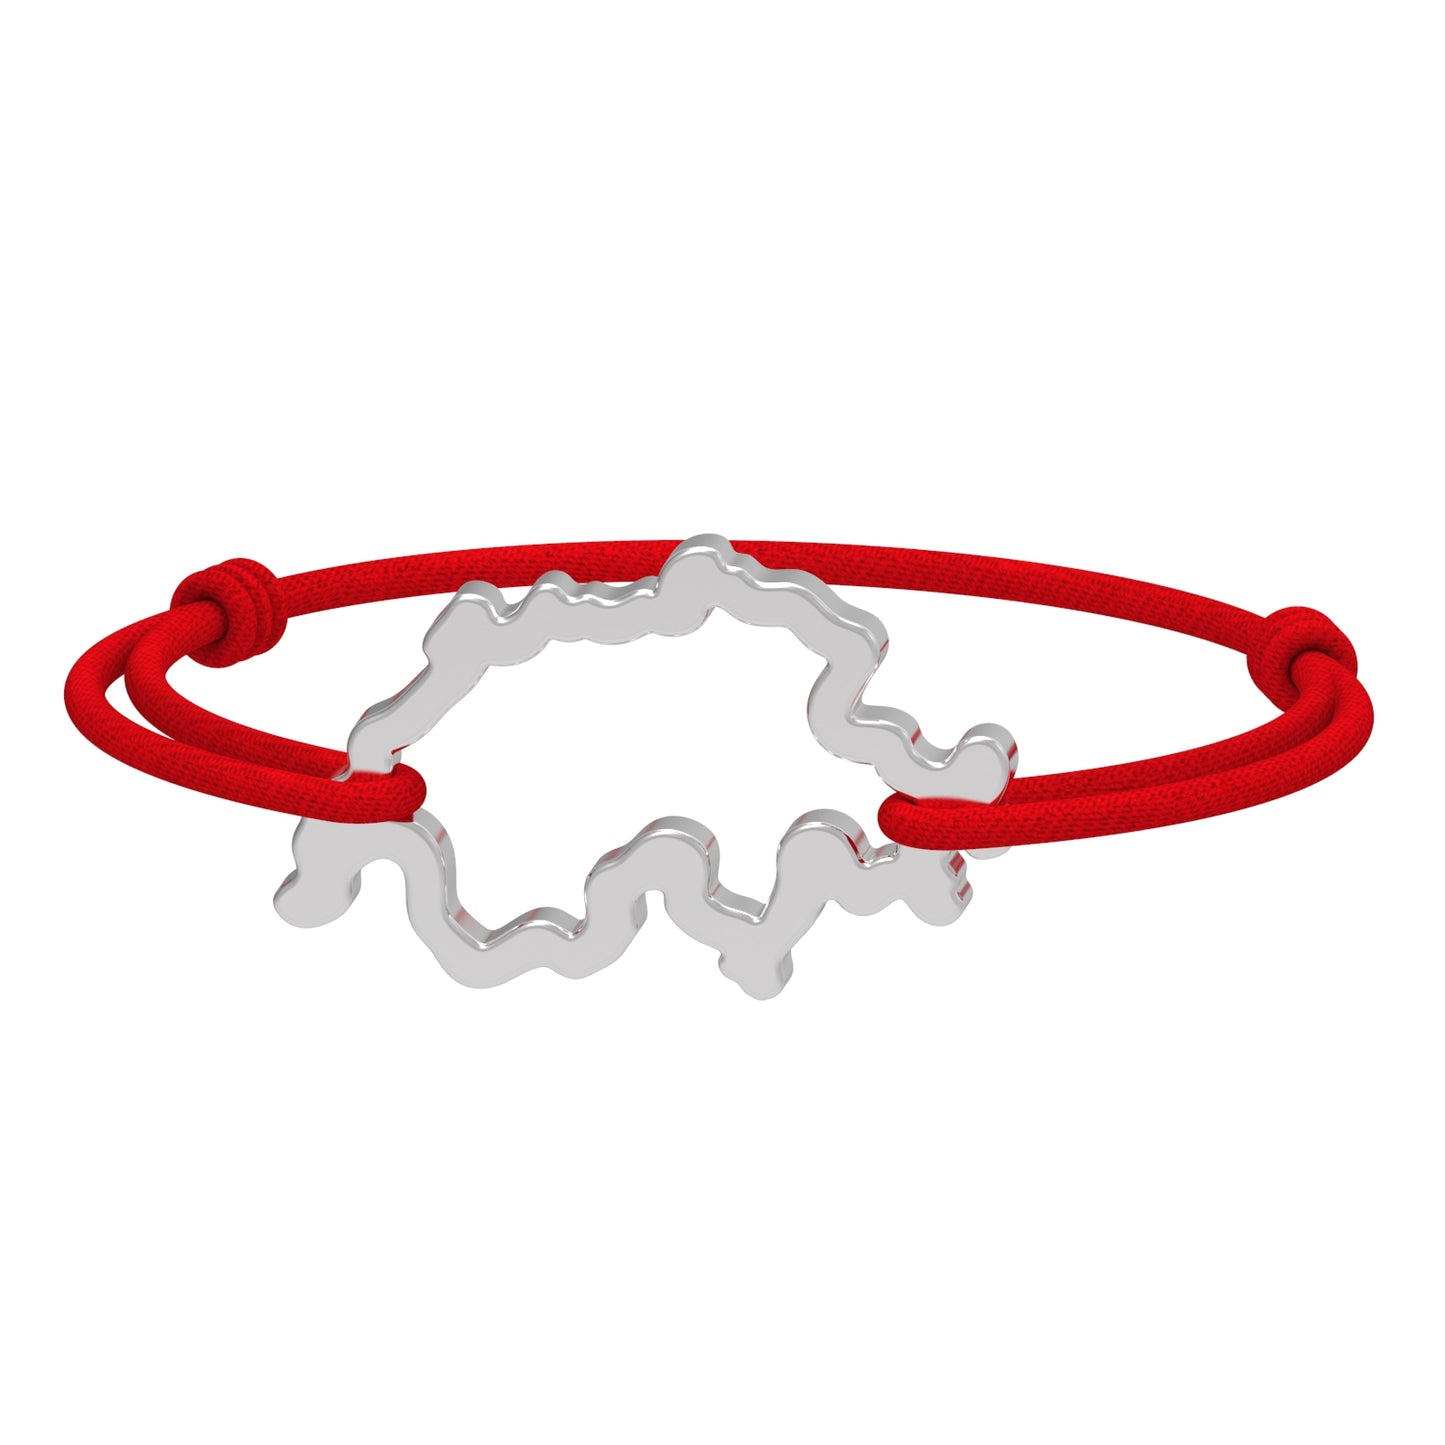 Dessin 3D du bracelet SwissMap en argent rhodié et cordon rouge